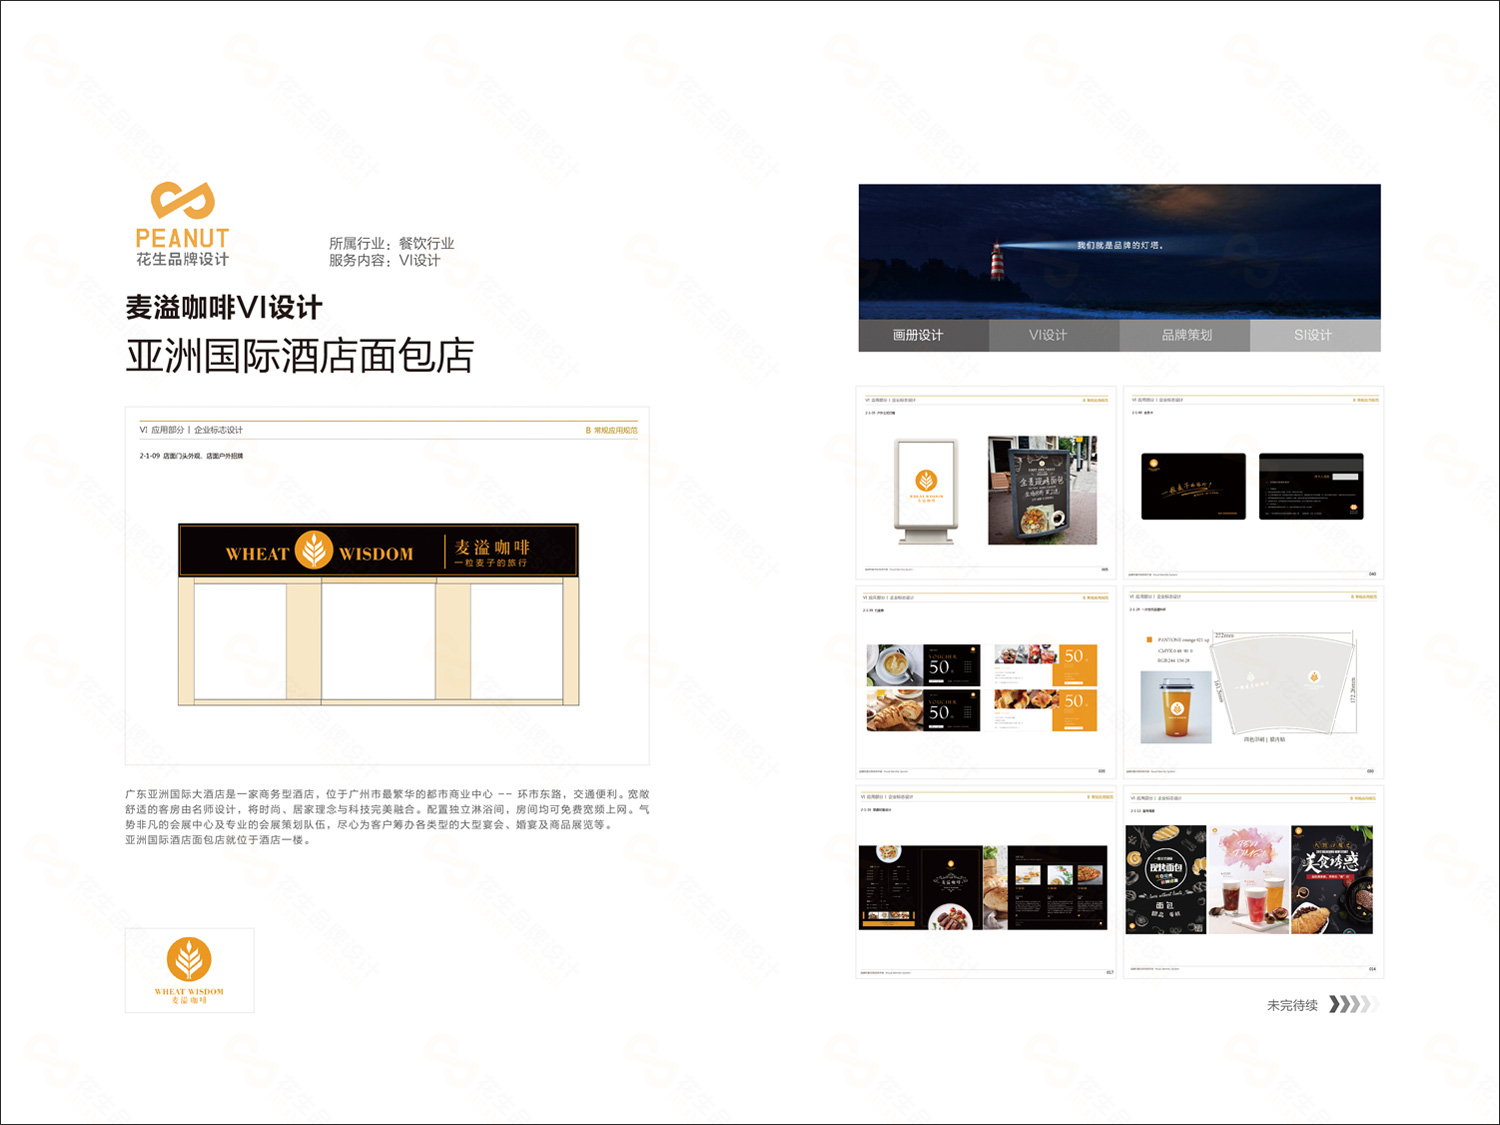 企业品牌设计基本流程-广州花生设计公司